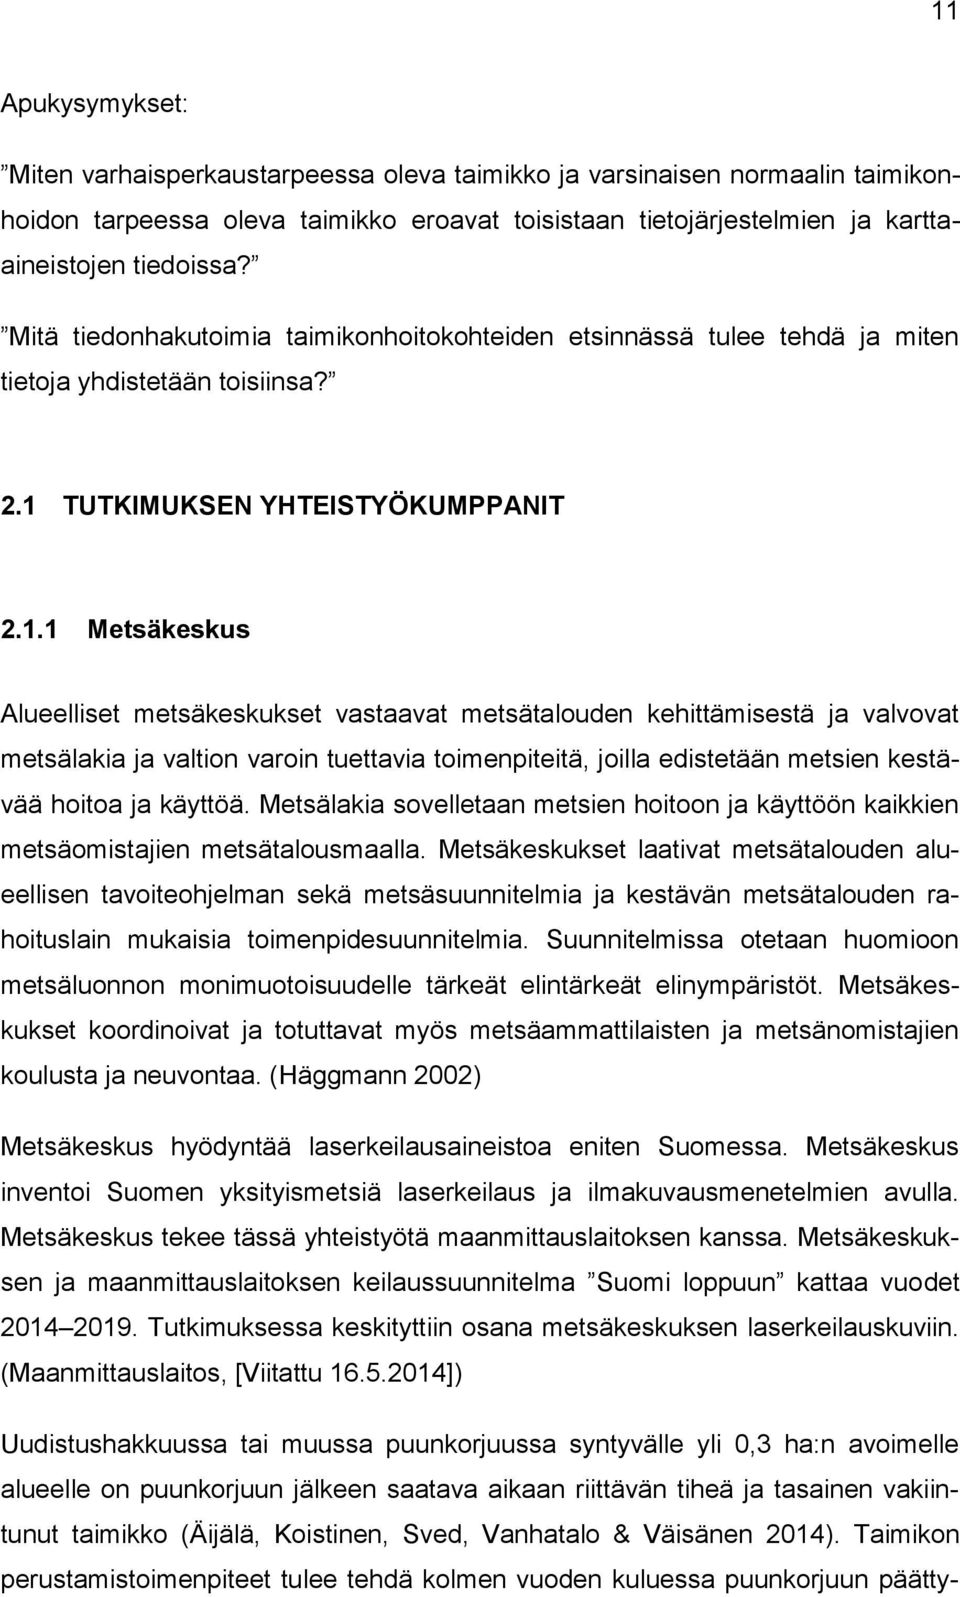 TUTKIMUKSEN YHTEISTYÖKUMPPANIT 2.1.